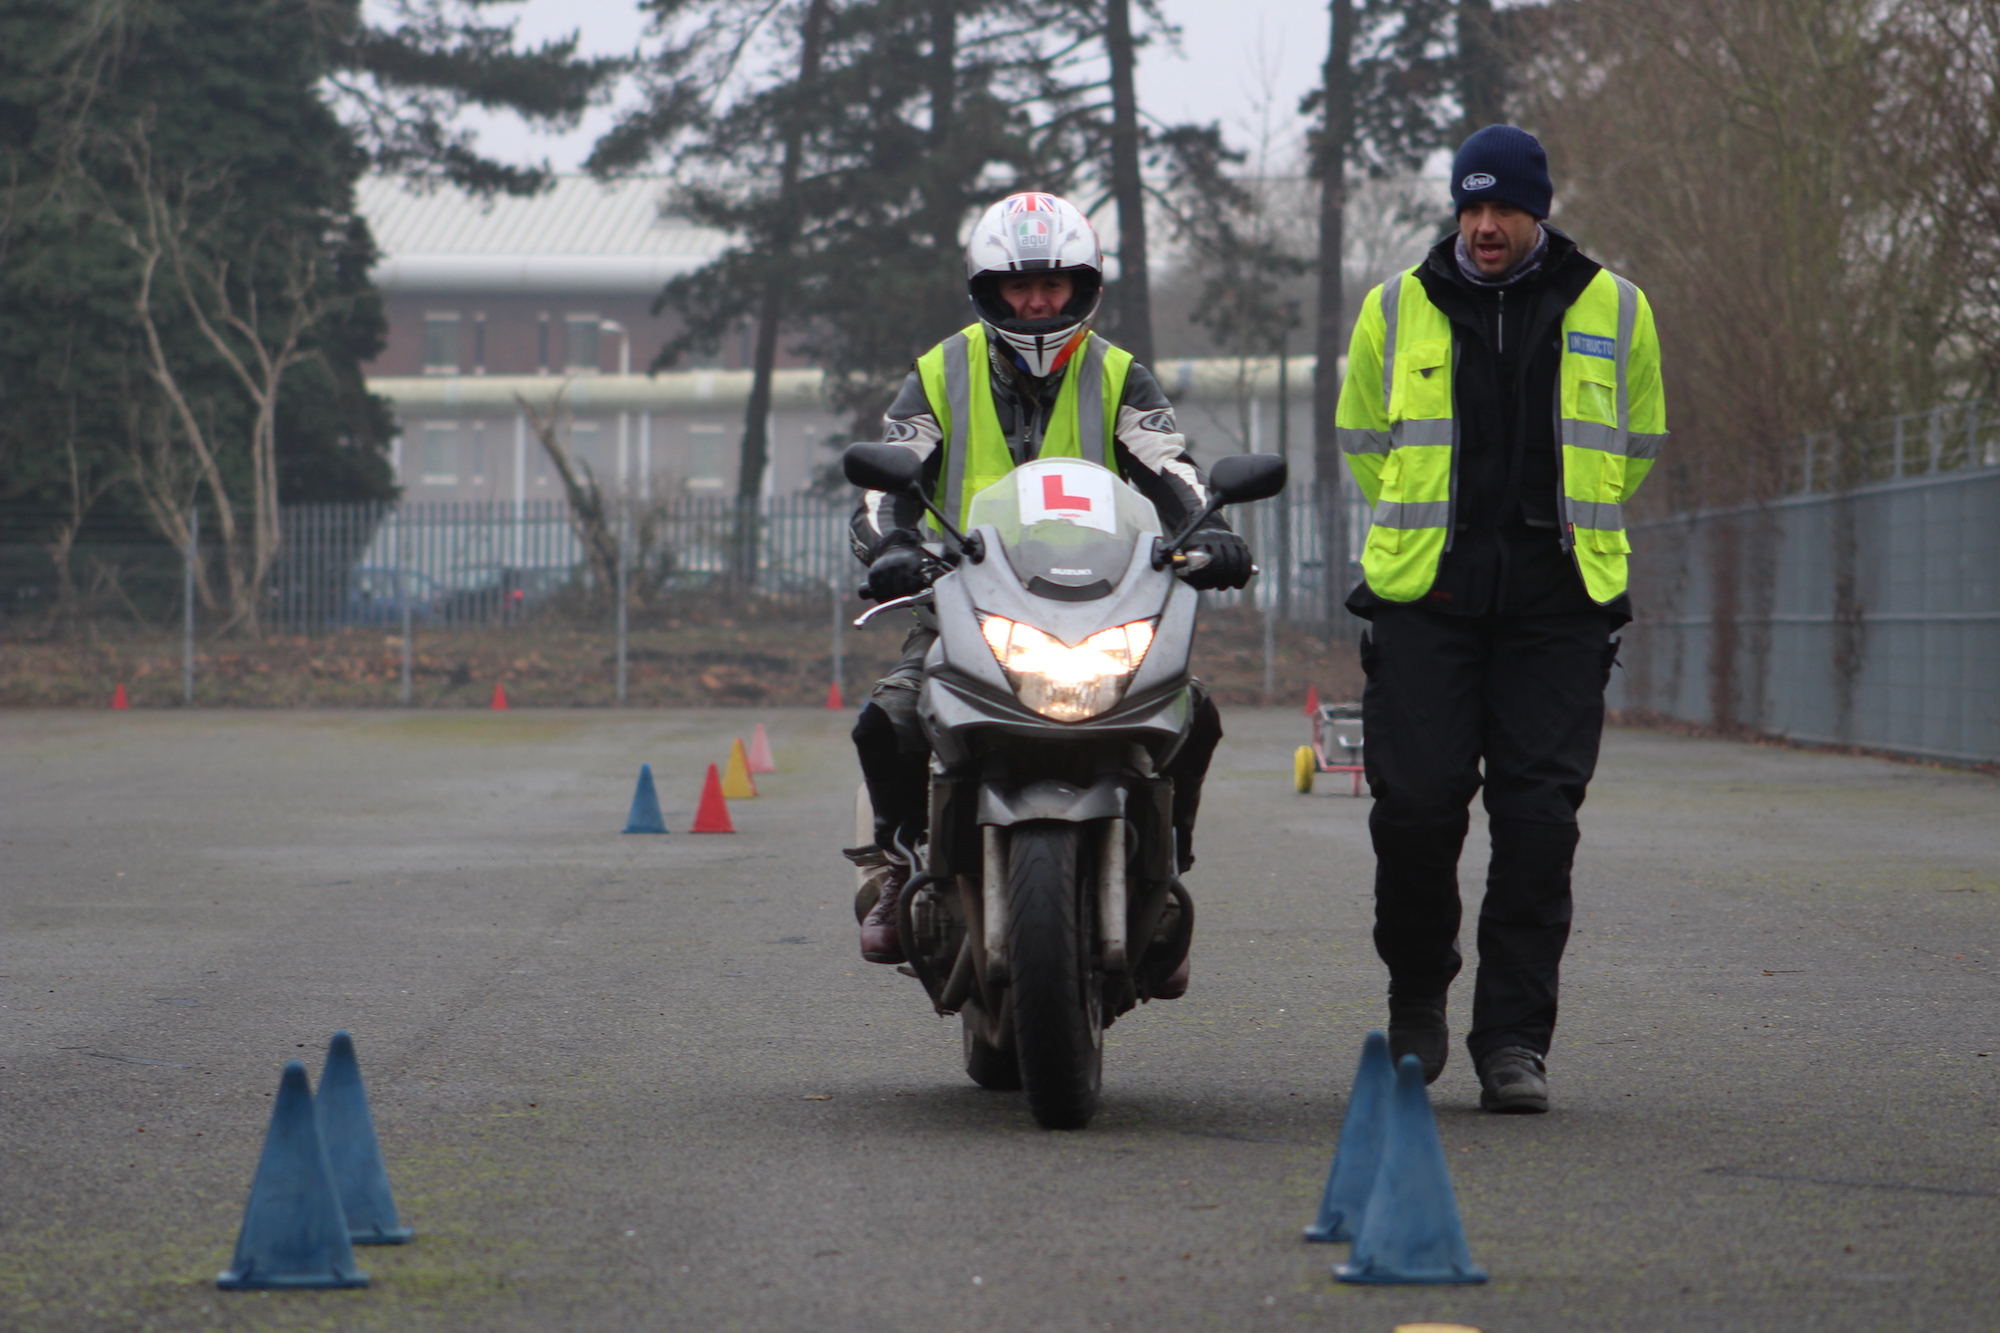 Pass the bike test in Nuneaton